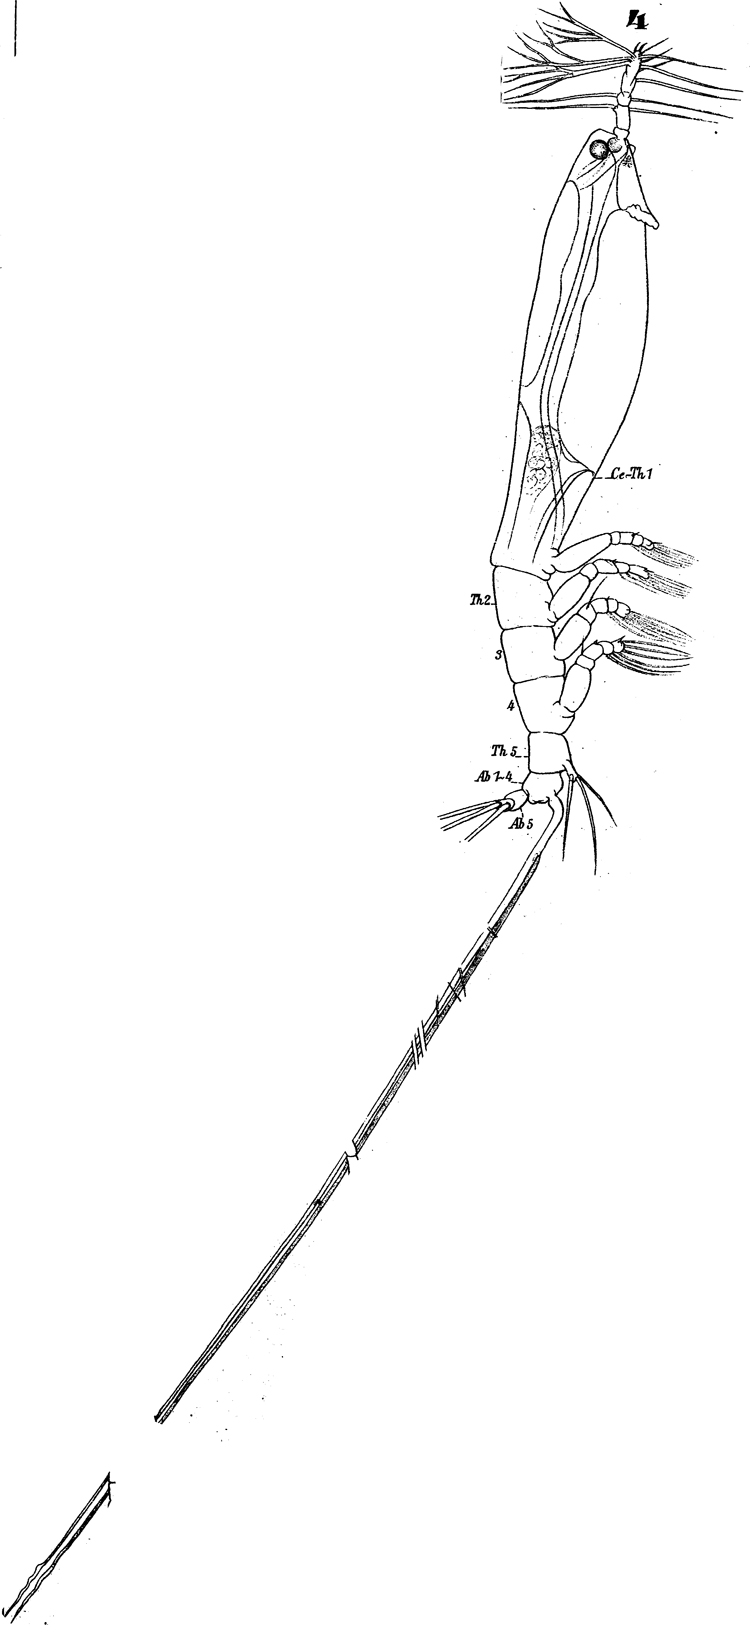 Species Cymbasoma longispinosum - Plate 5 of morphological figures